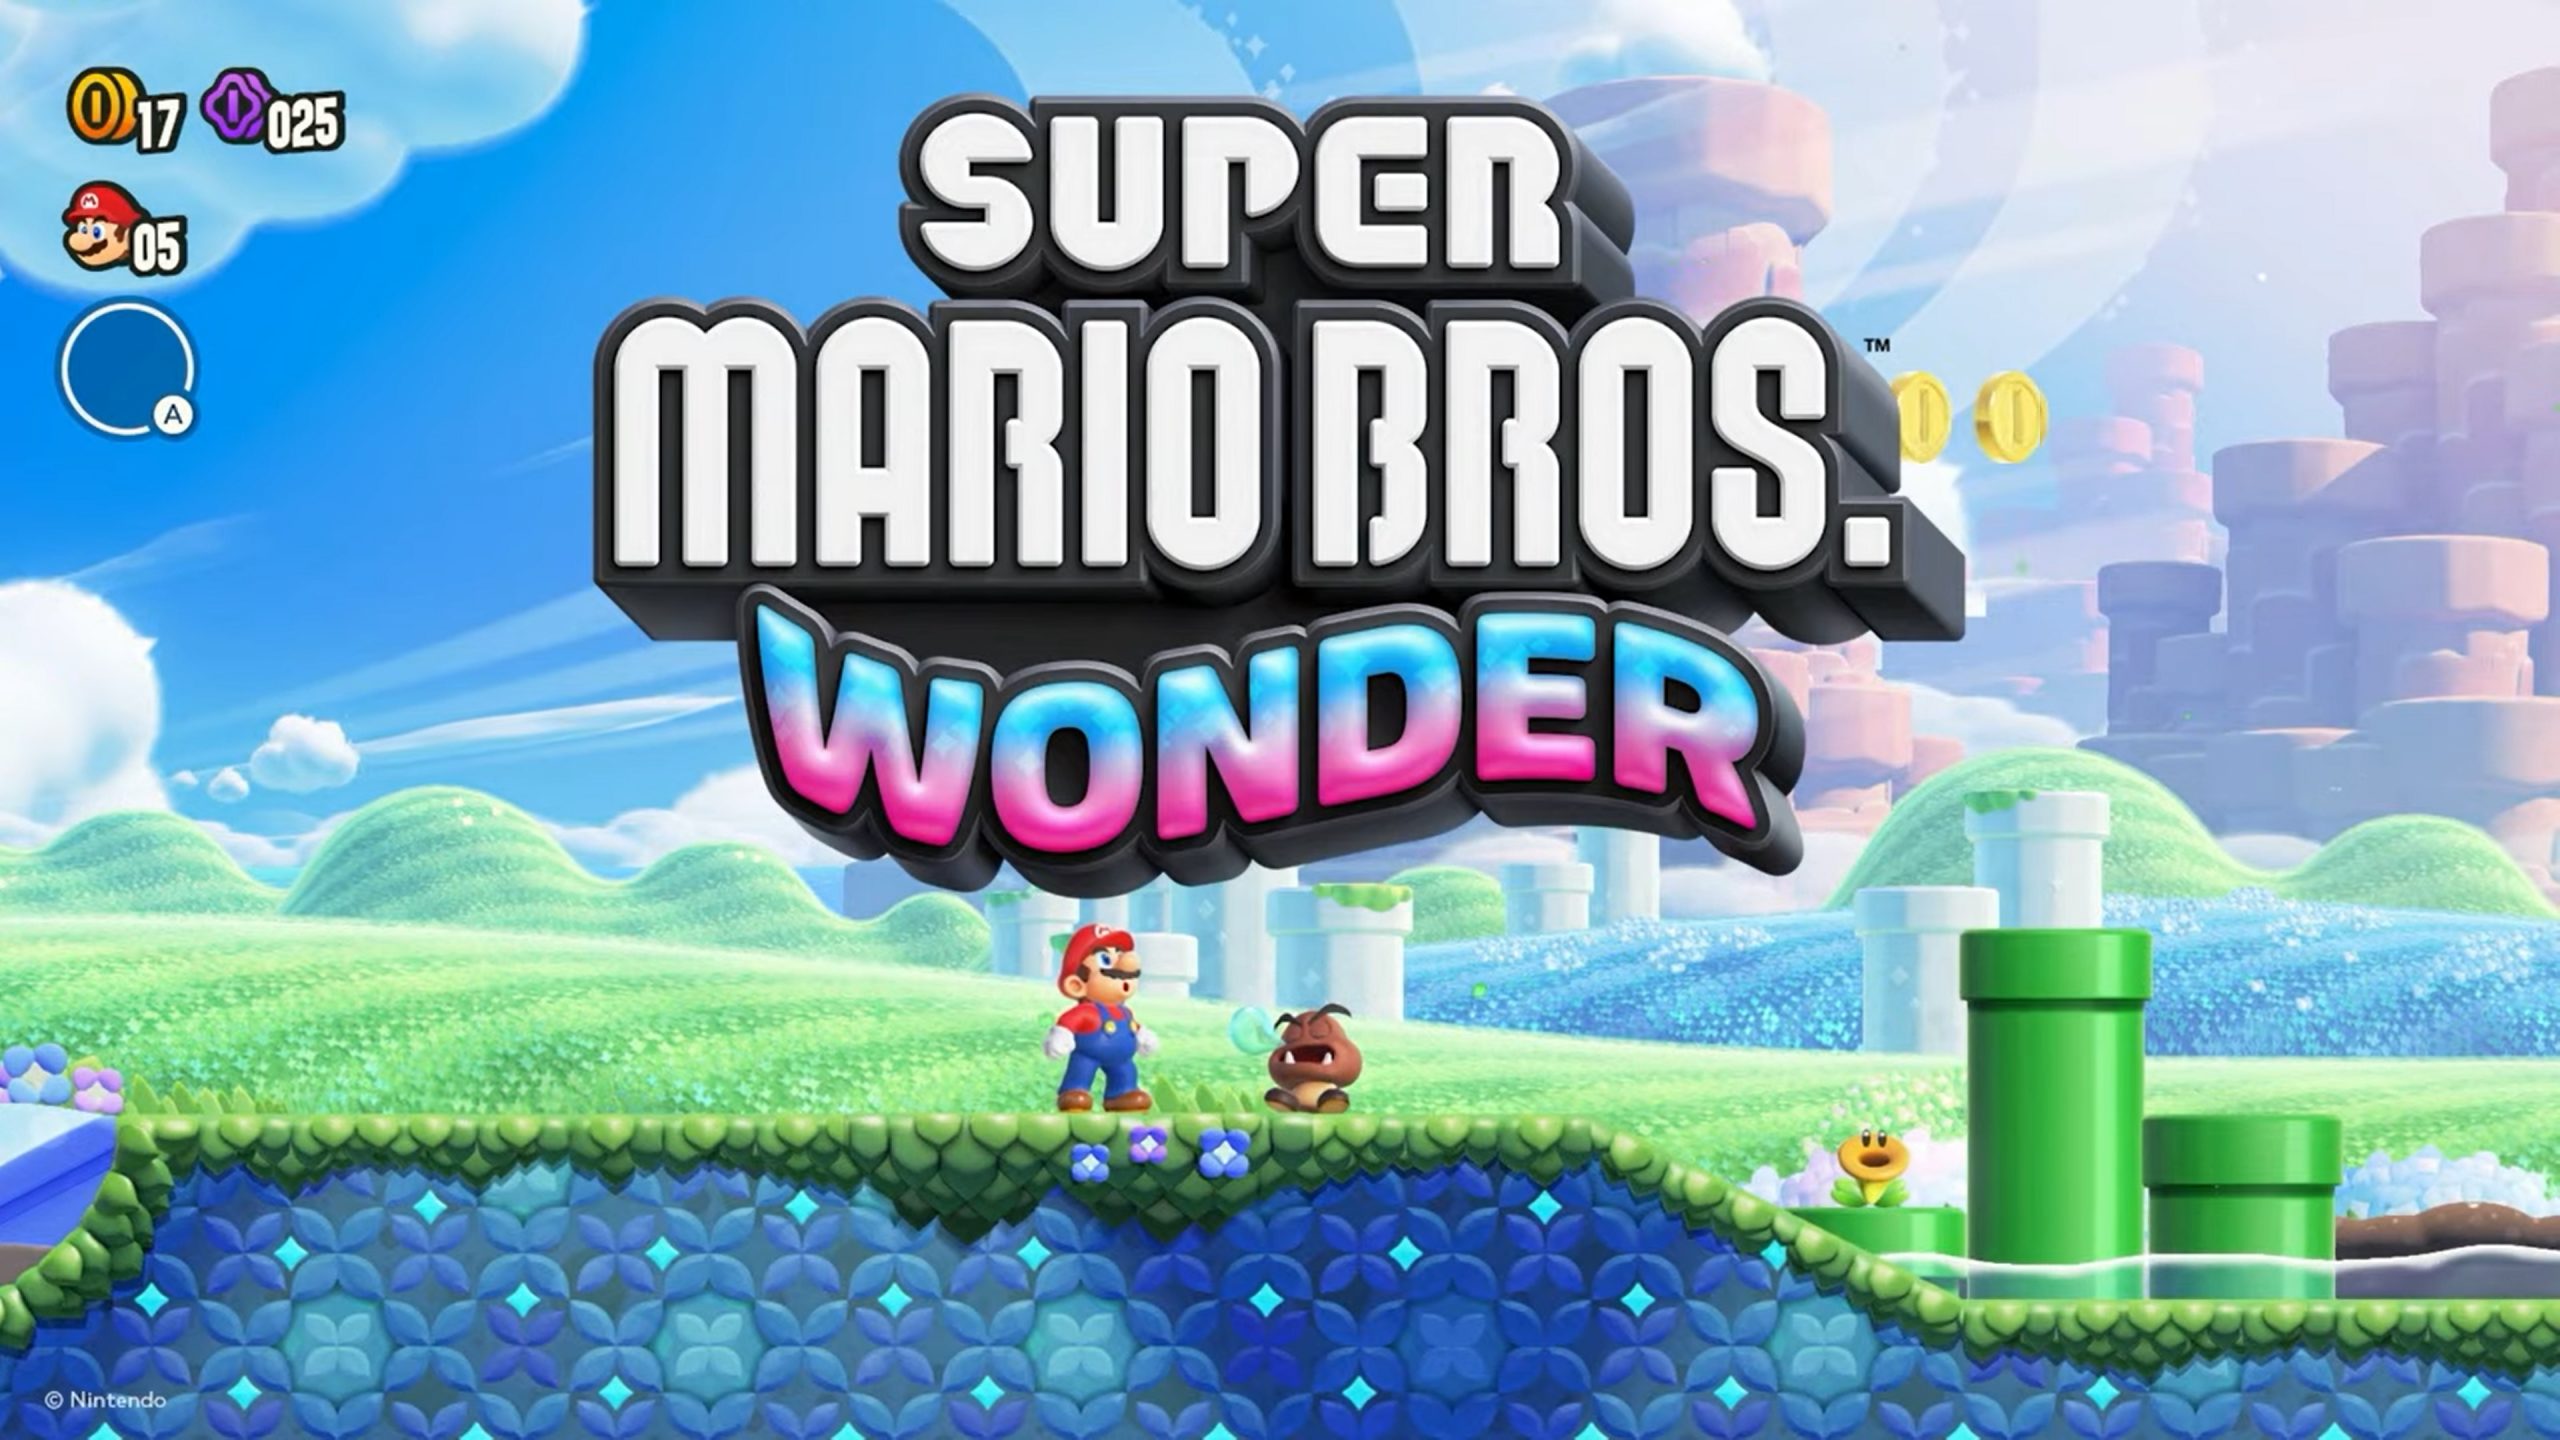 Het aantal verkochte fysieke exemplaren van Super Mario Bros. Wonder in Japan bedroeg in totaal meer dan 638 duizend. Het spel behaalde de eerste plaats in de hitlijsten